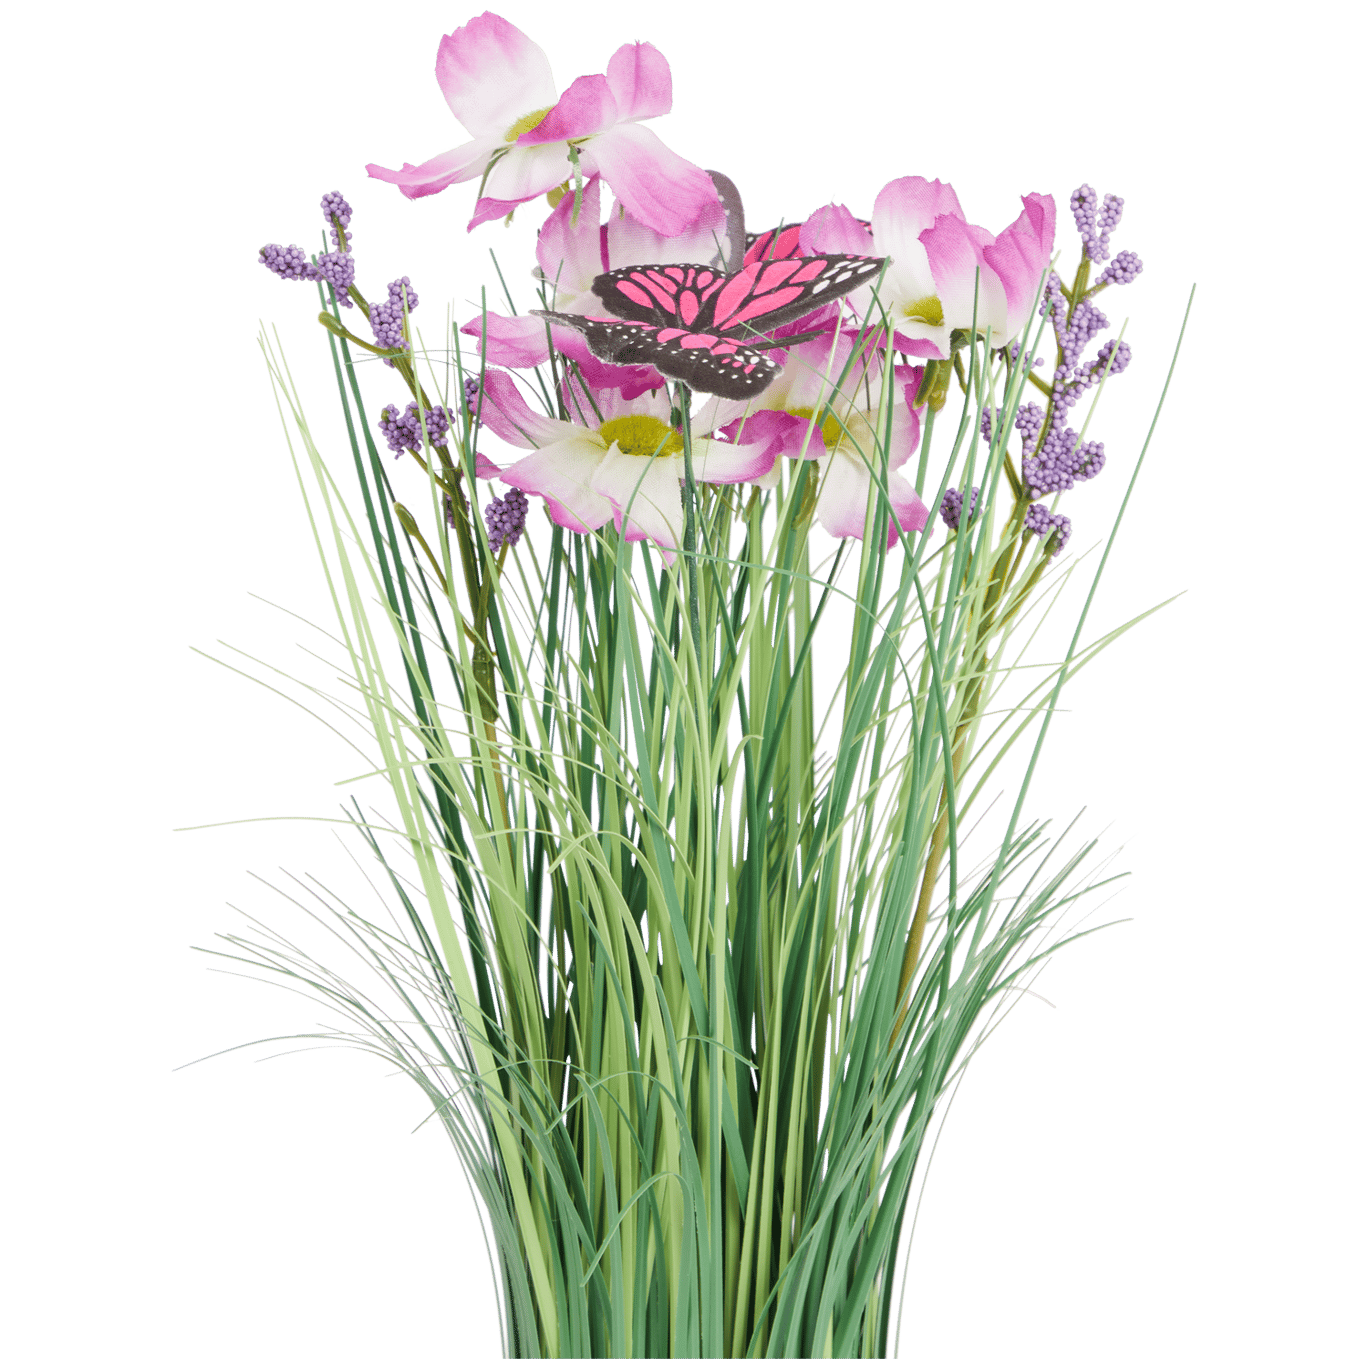 Briznas de hierba con flores y mariposas